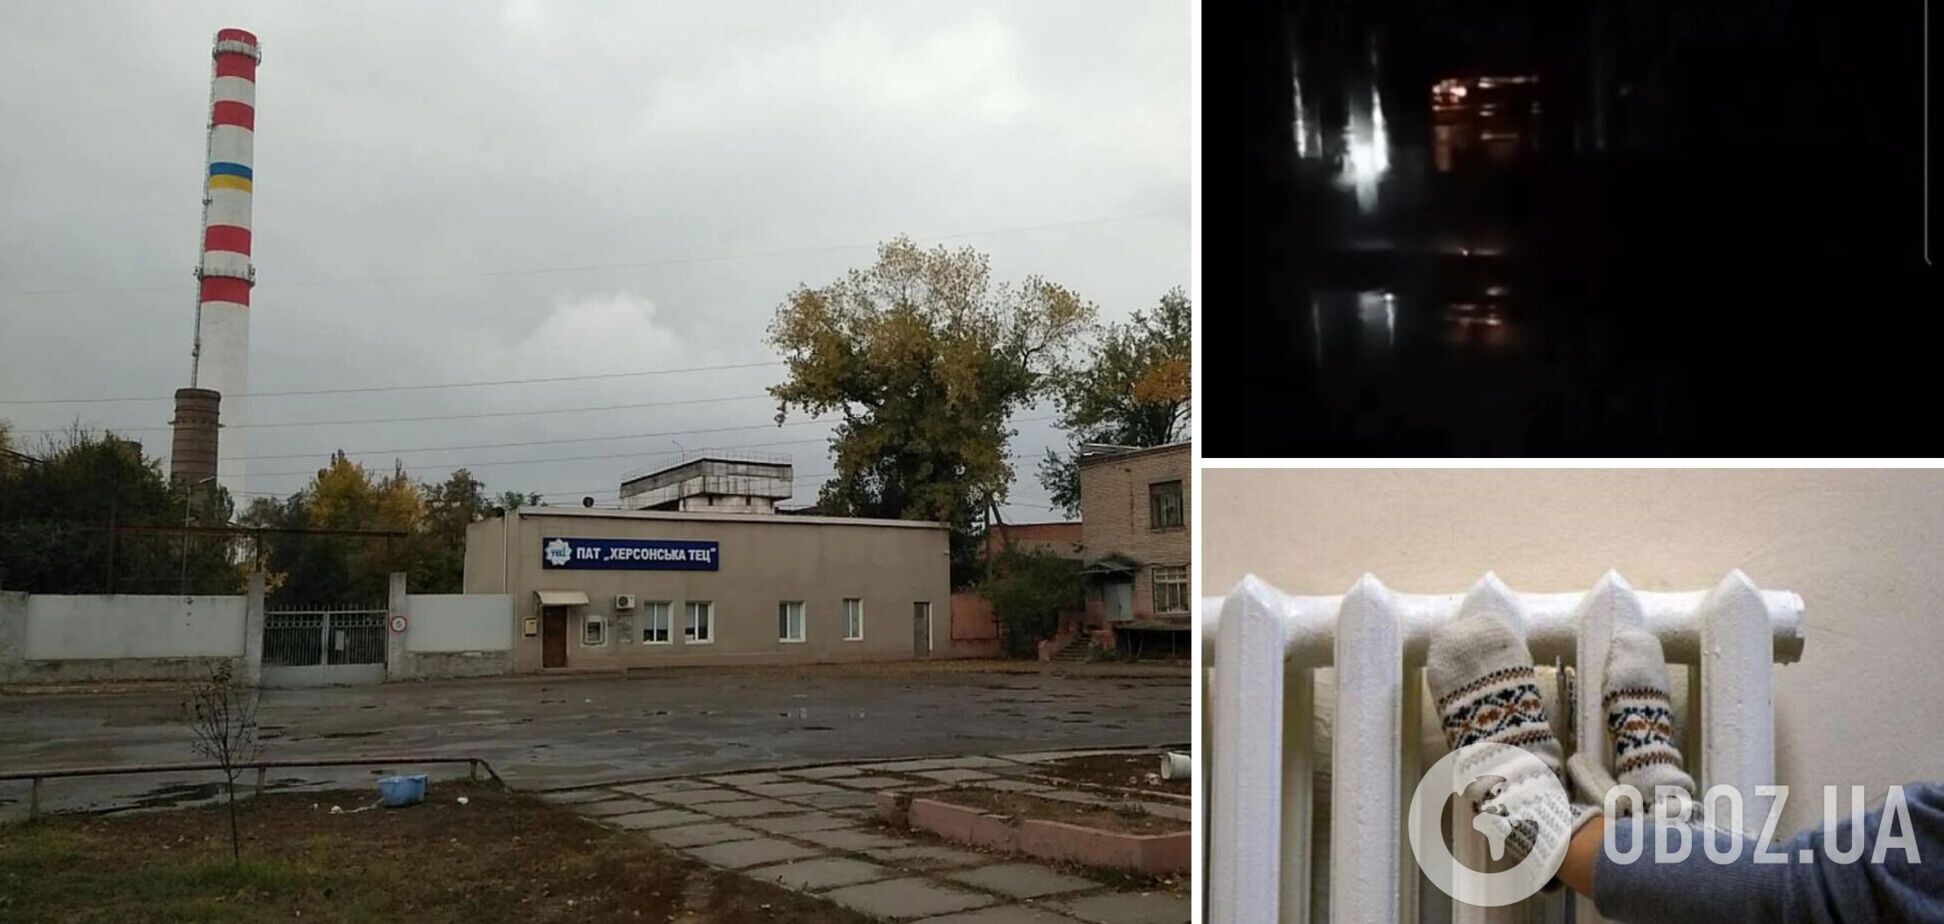 Войска РФ обстреляли ТЭЦ в Херсоне: часть домов осталась без тепла, в центре разворачивают палатки. Видео